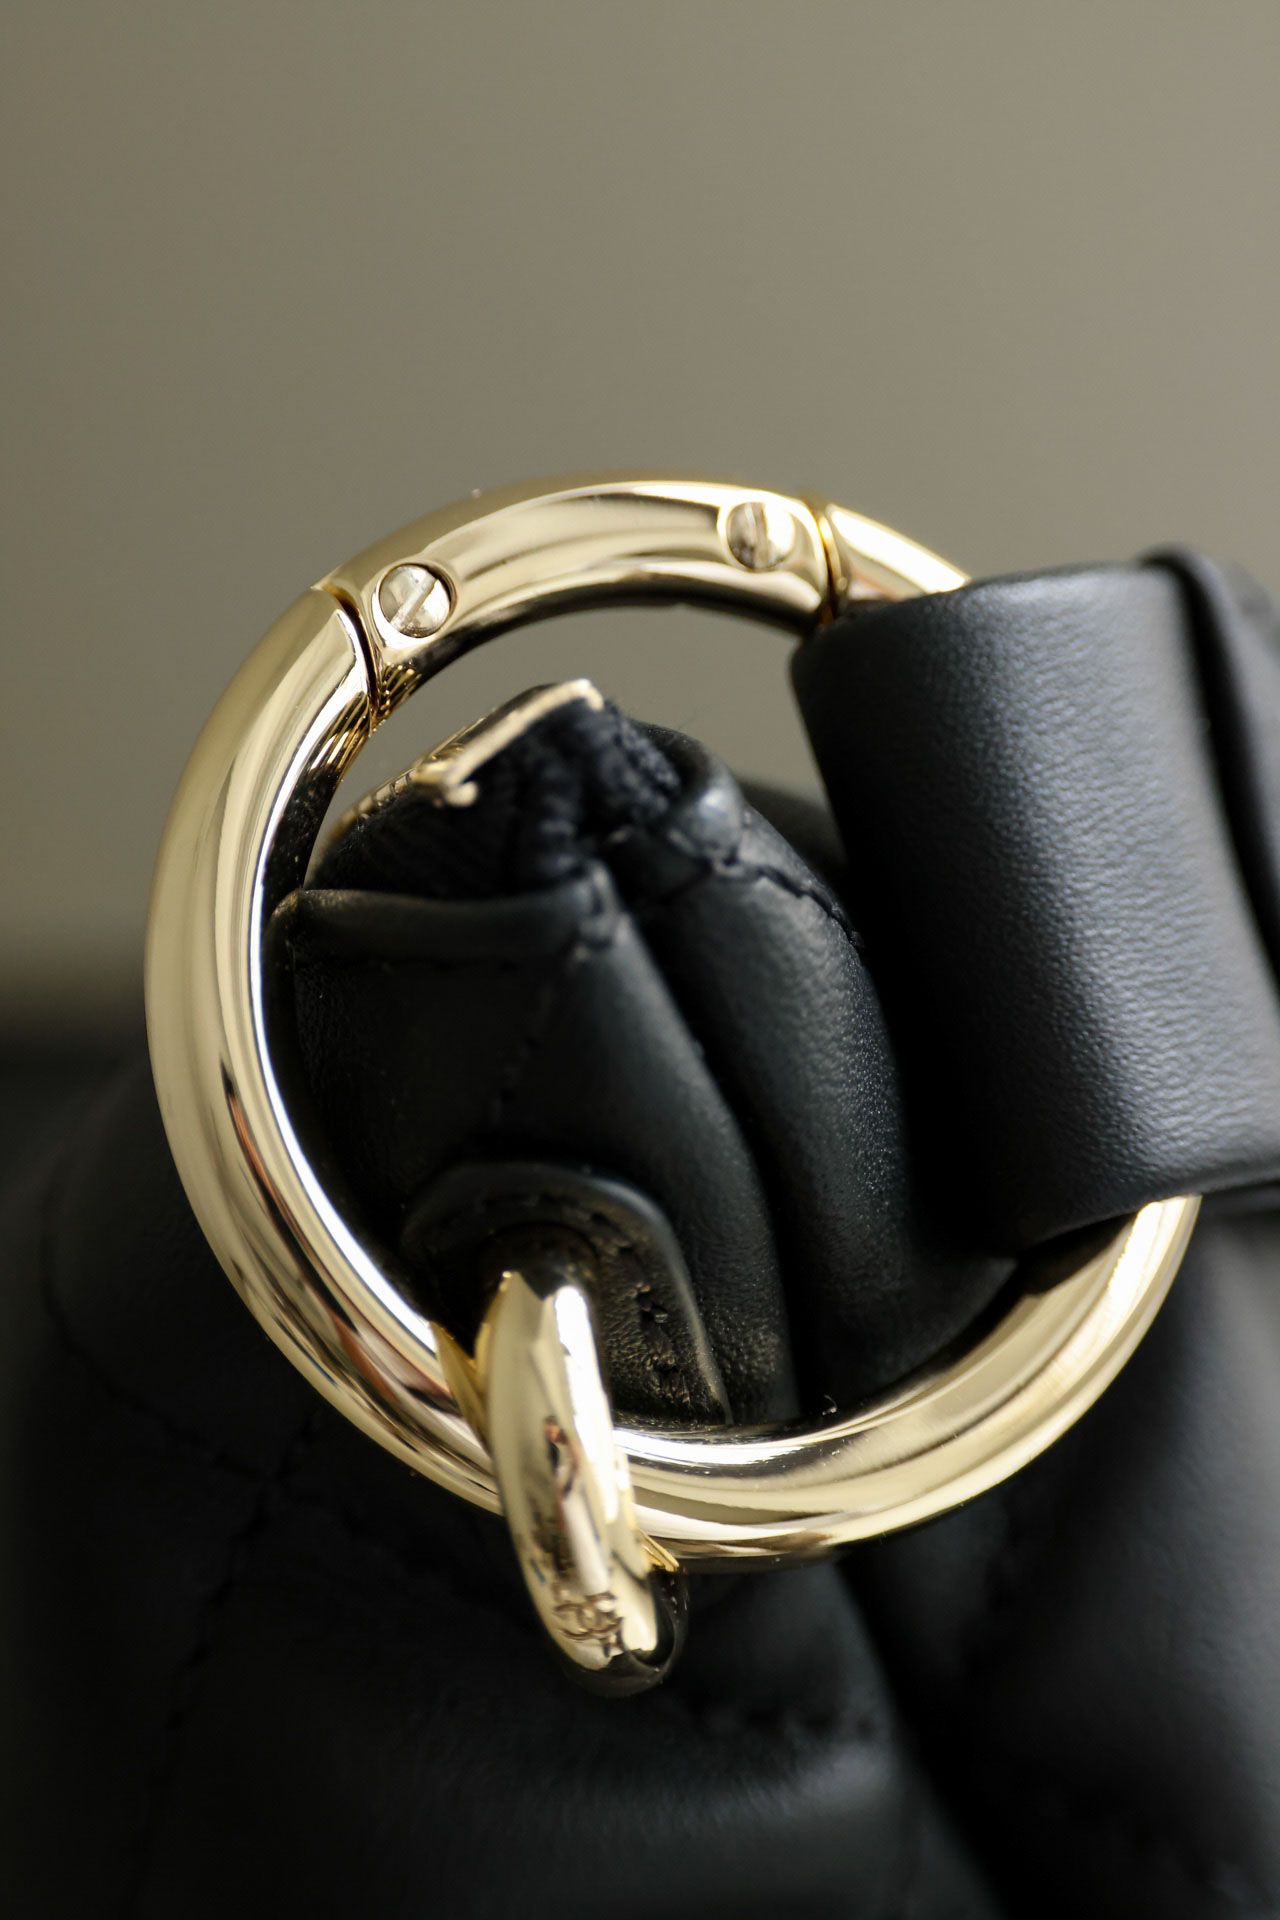 Túi Chanel Matelasse Lambskin Shoulder Bag Black Gold Metal Fittings